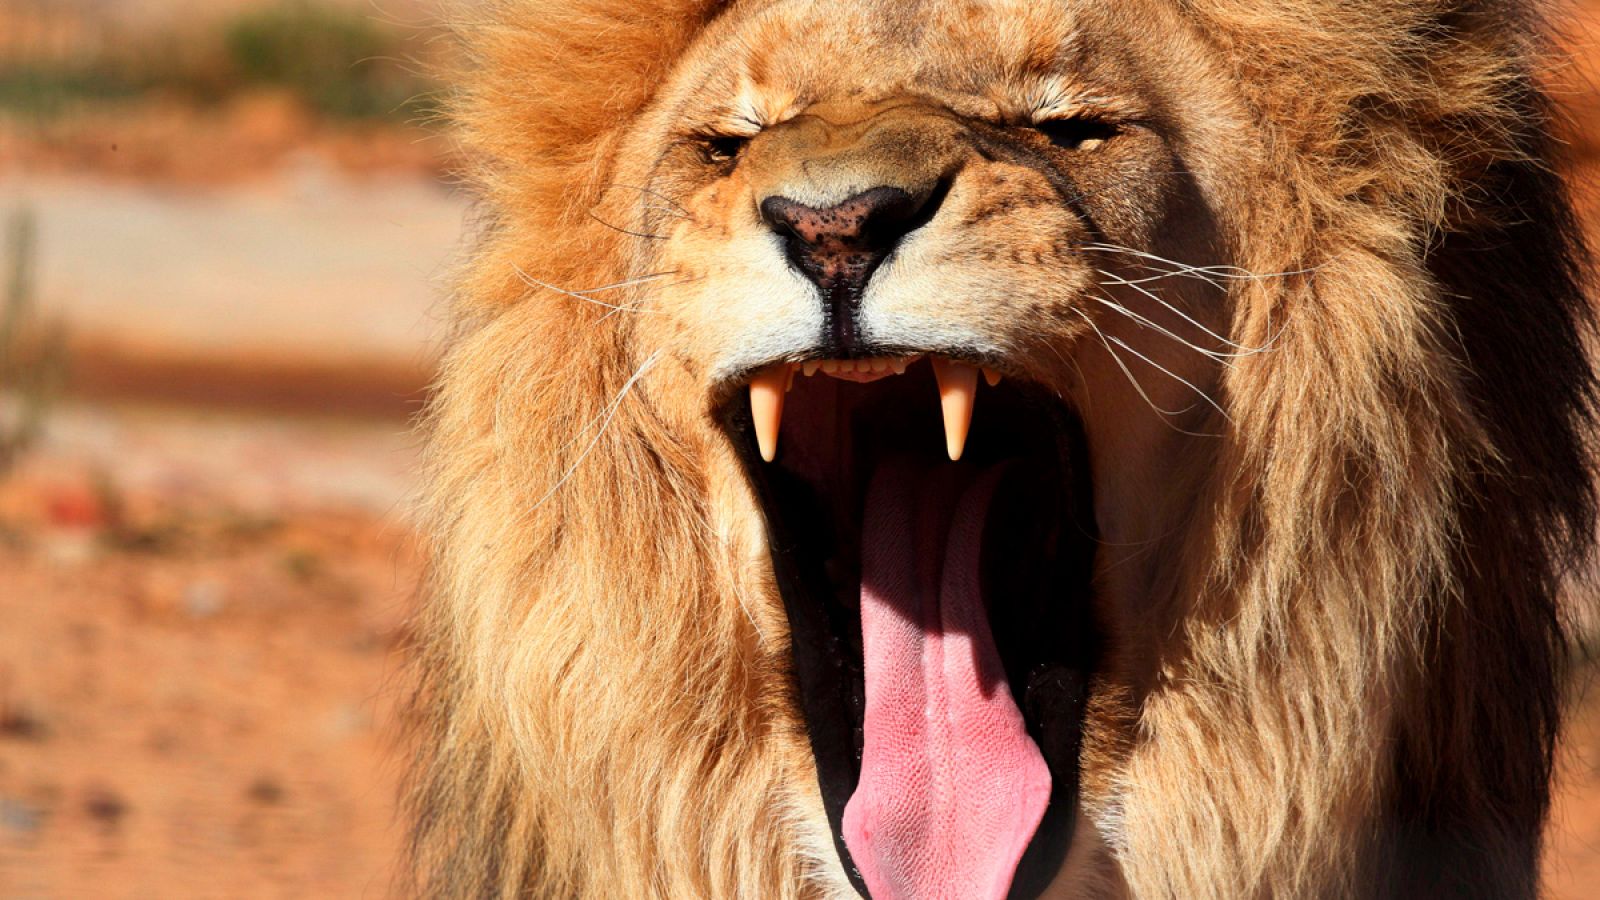 Los furtivos se habían adentrado en una área poblada por leones dentro del parque natural.